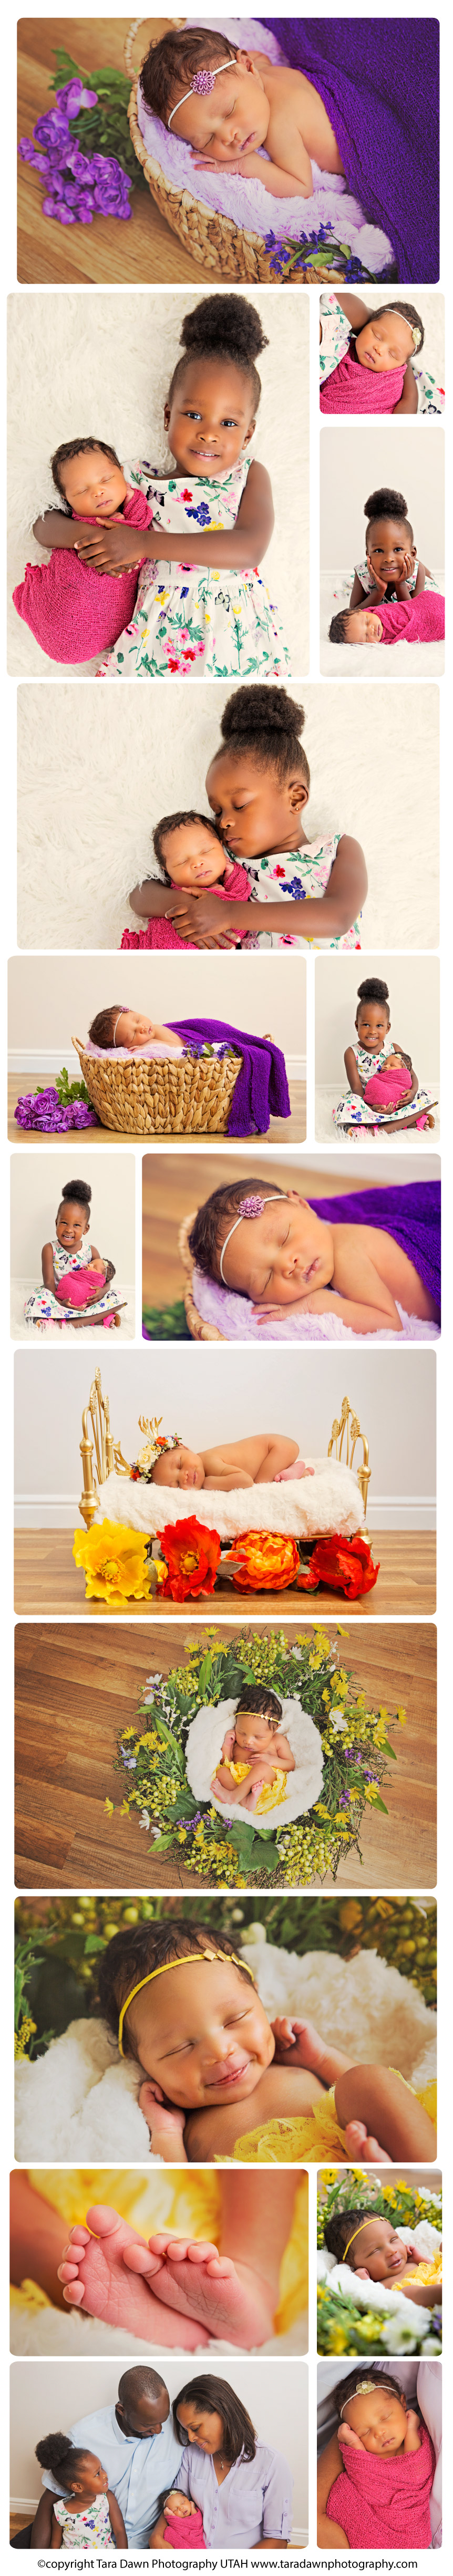 utah_studio_newborn_photography_family